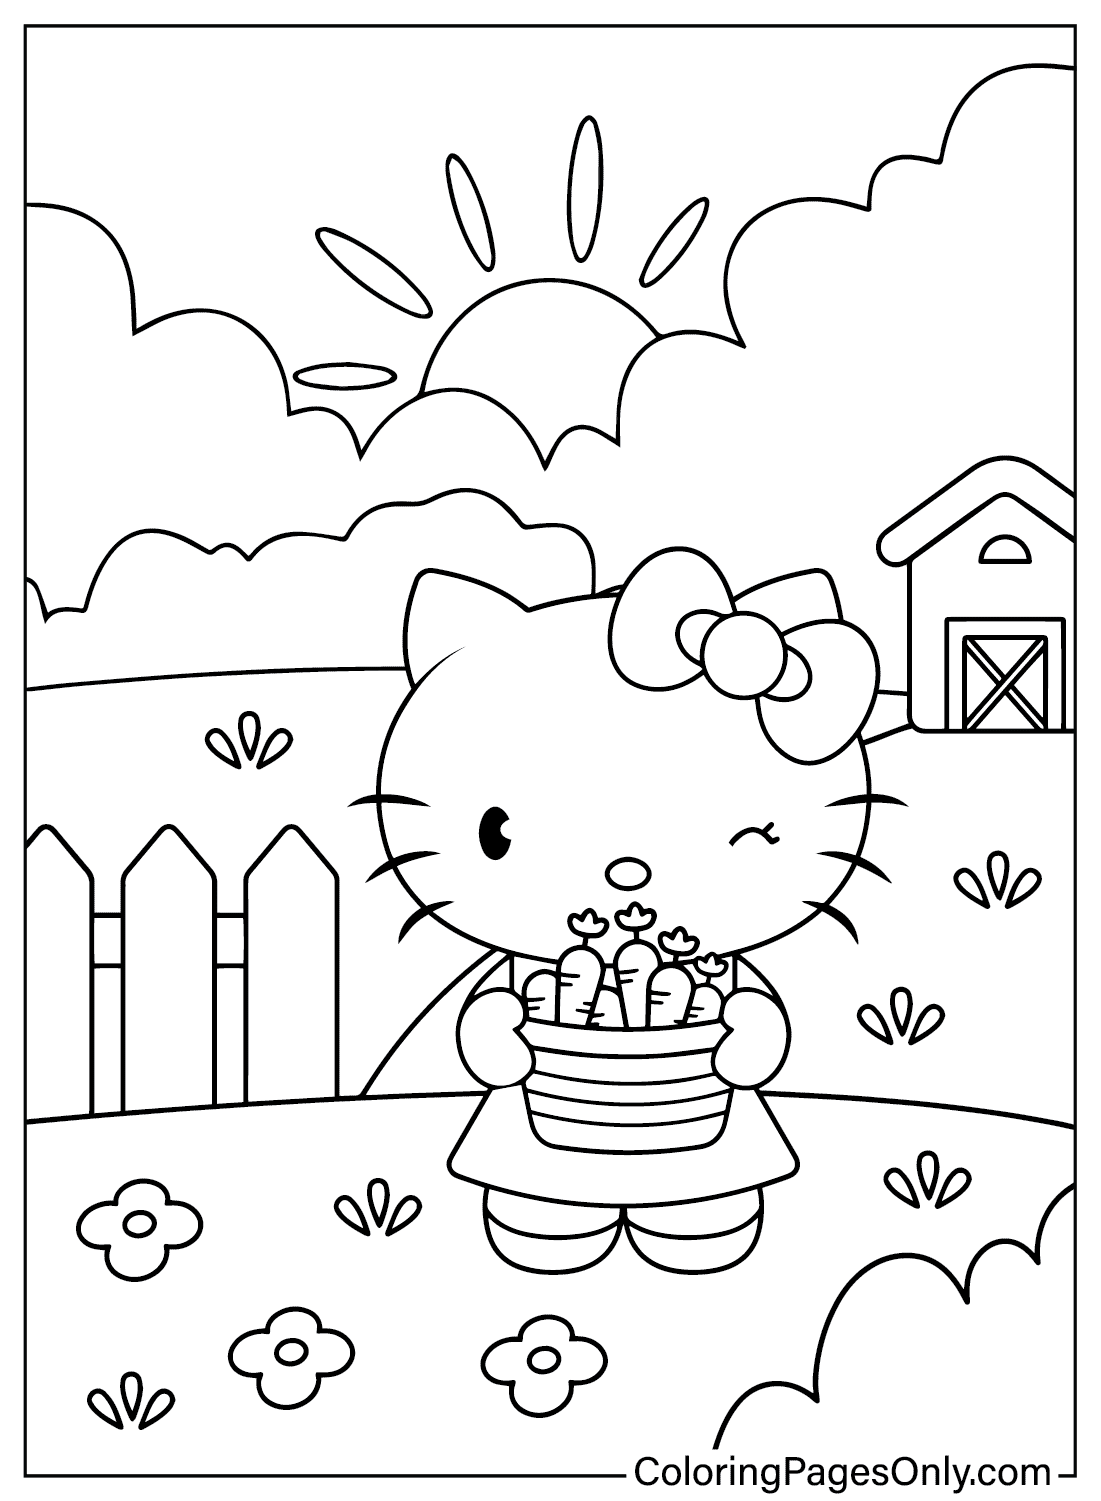 Imagens da Hello Kitty para colorir